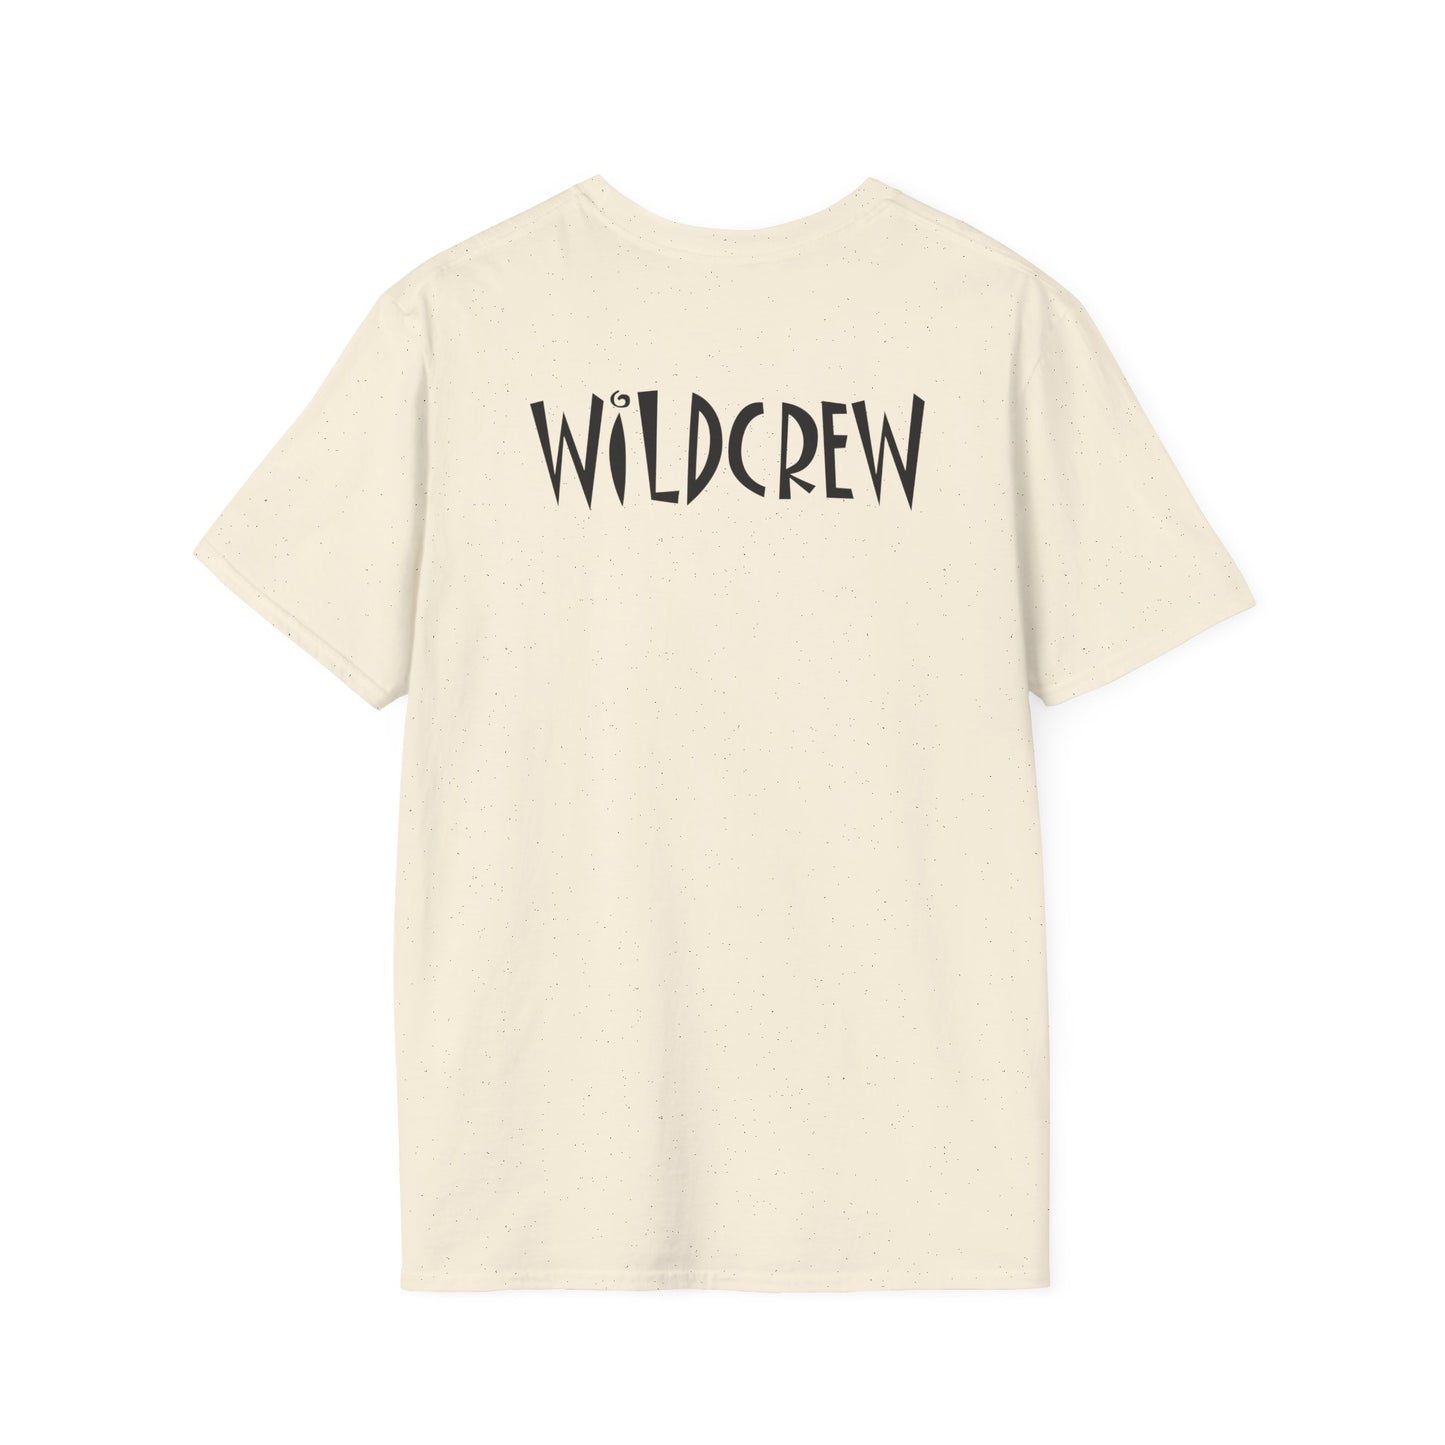 Wildwood Beer:30 Cotton T-shirt